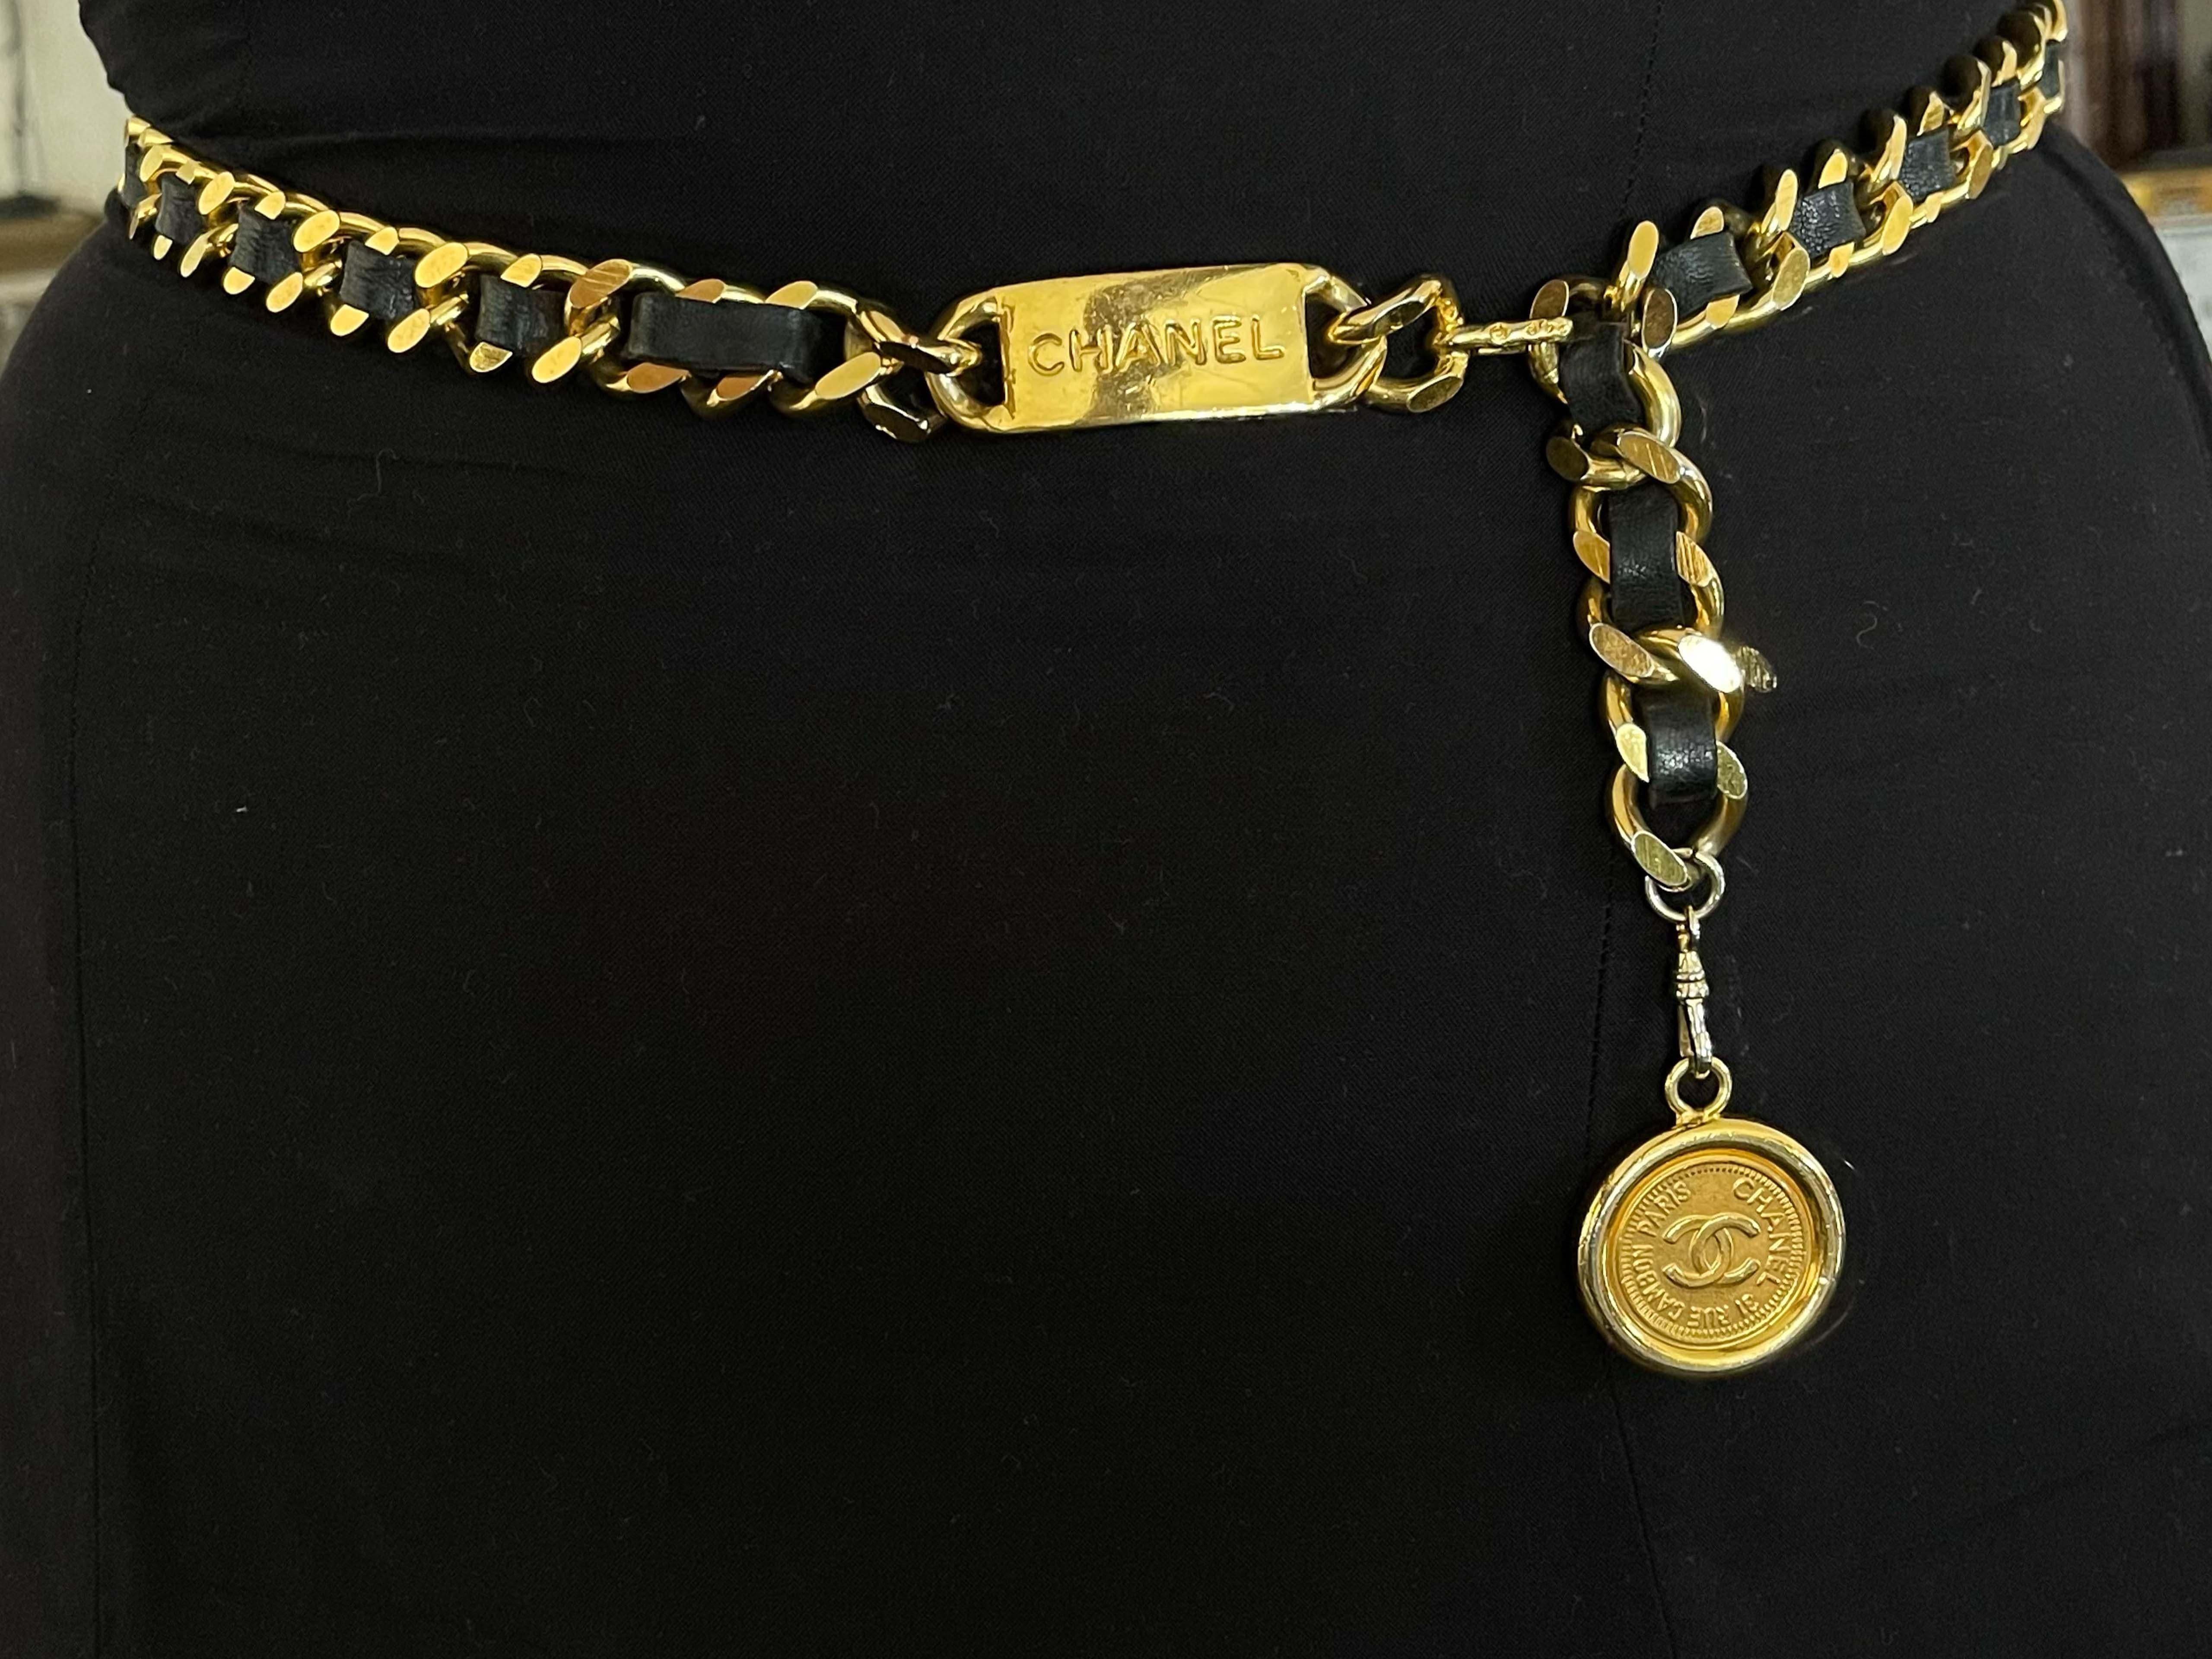 Classique et chic, cette ceinture en cuir à chaîne vintage de Chanel est réalisée en métal doré et rehaussée d'un pendentif en médaillon gravé du logo 'CC'. La fermeture peut être accrochée à plusieurs maillons pour une variété